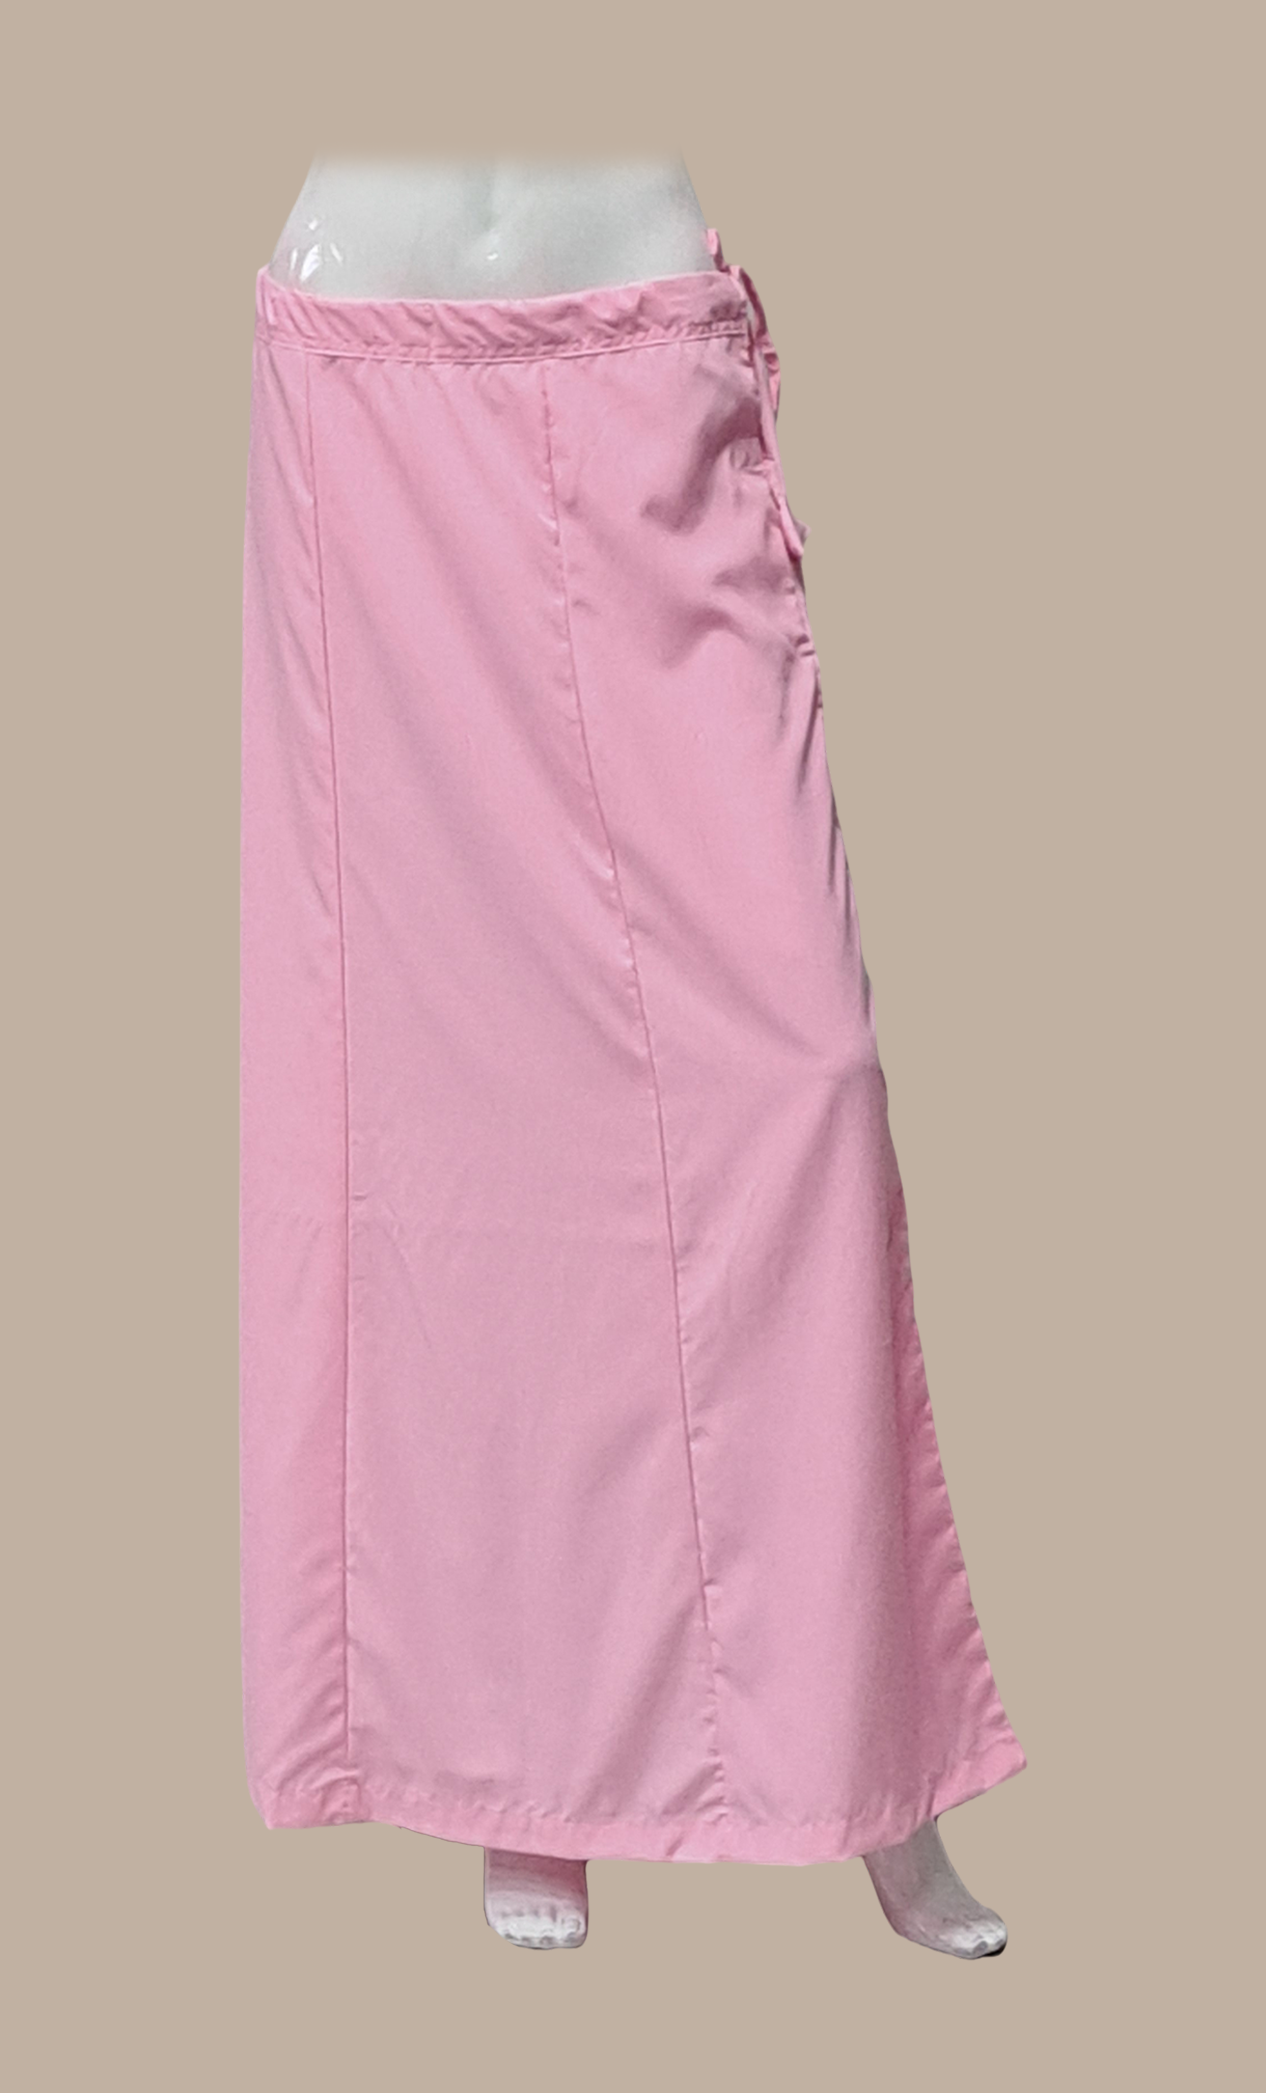 Light Pink Cotton Under Skirt